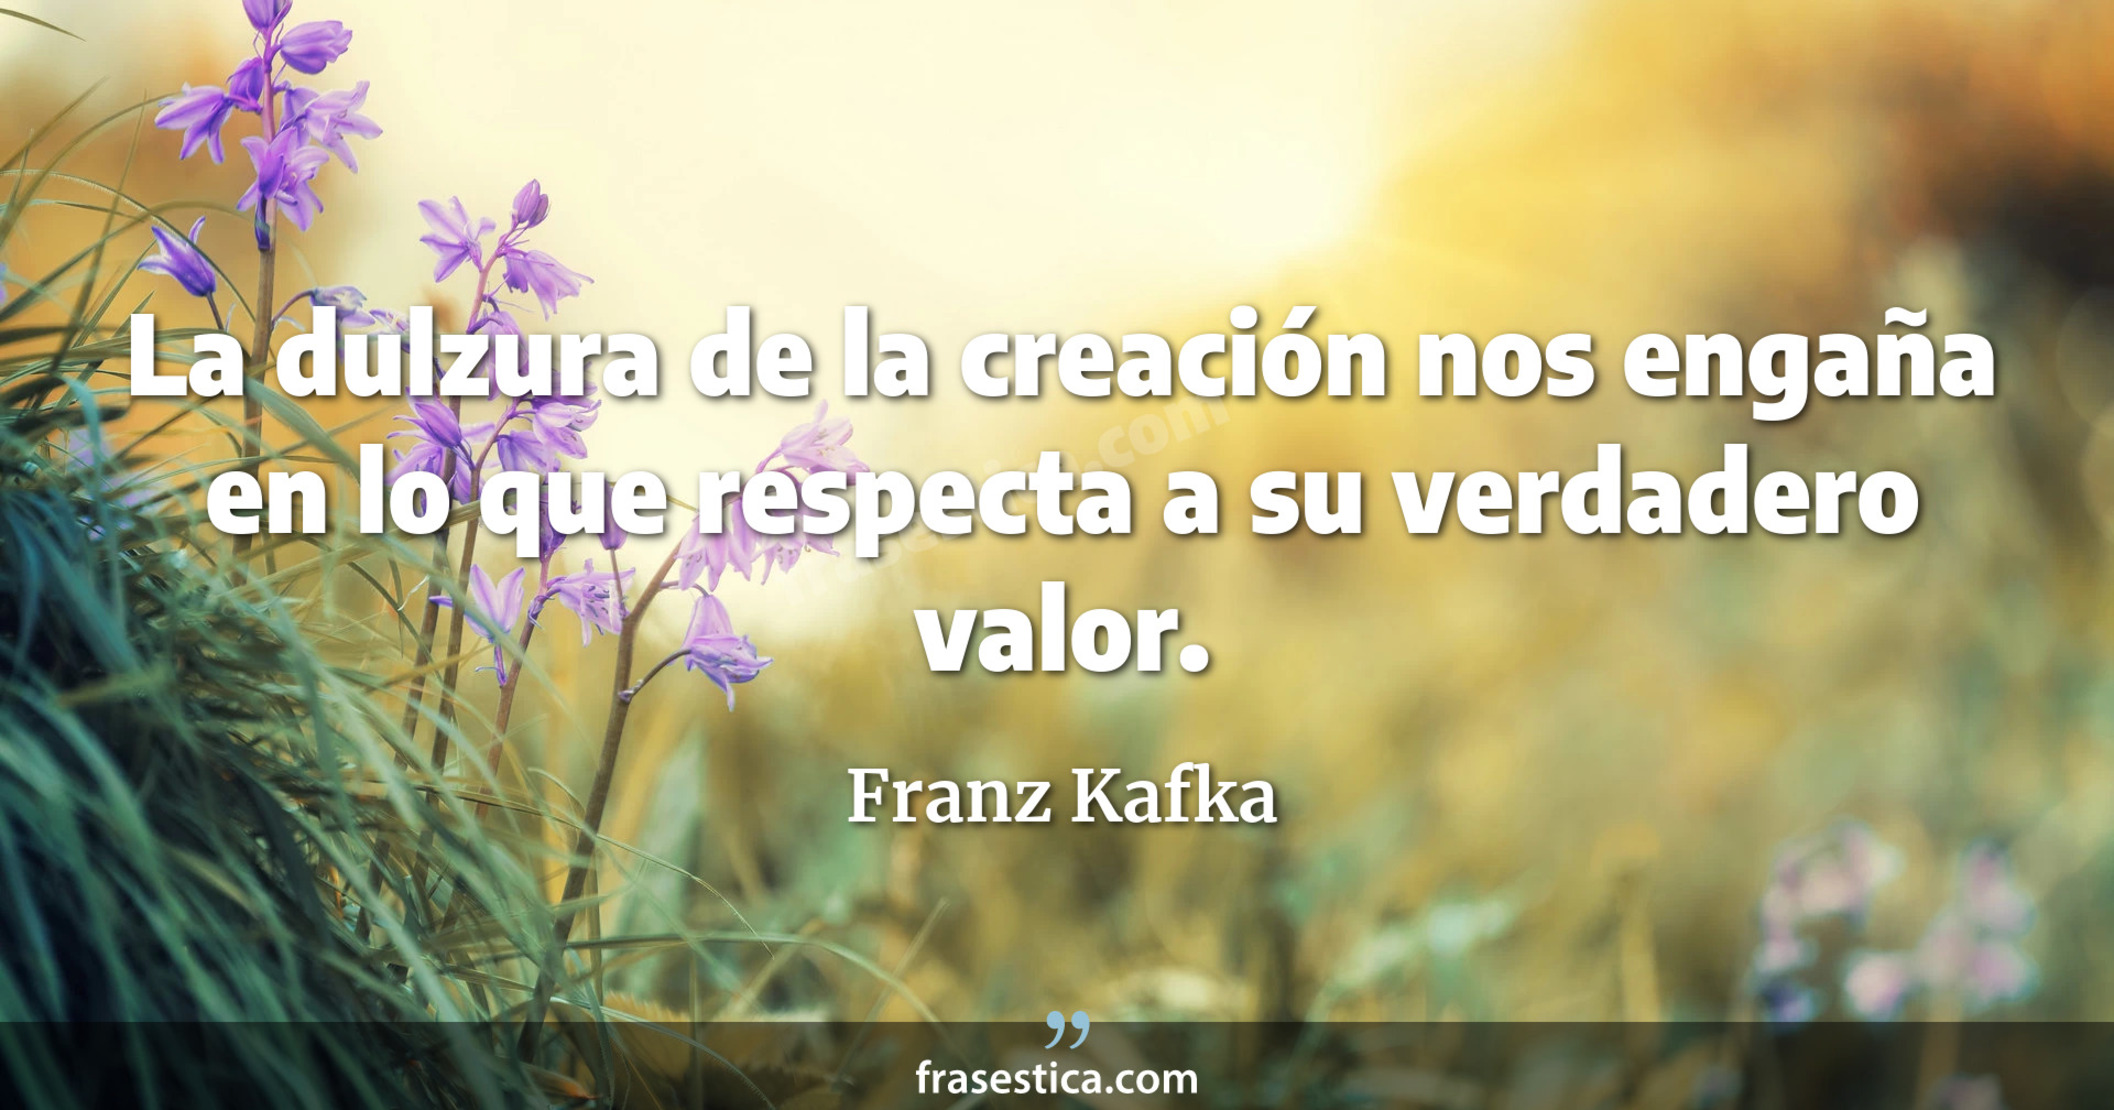 La dulzura de la creación nos engaña en lo que respecta a su verdadero valor. - Franz Kafka